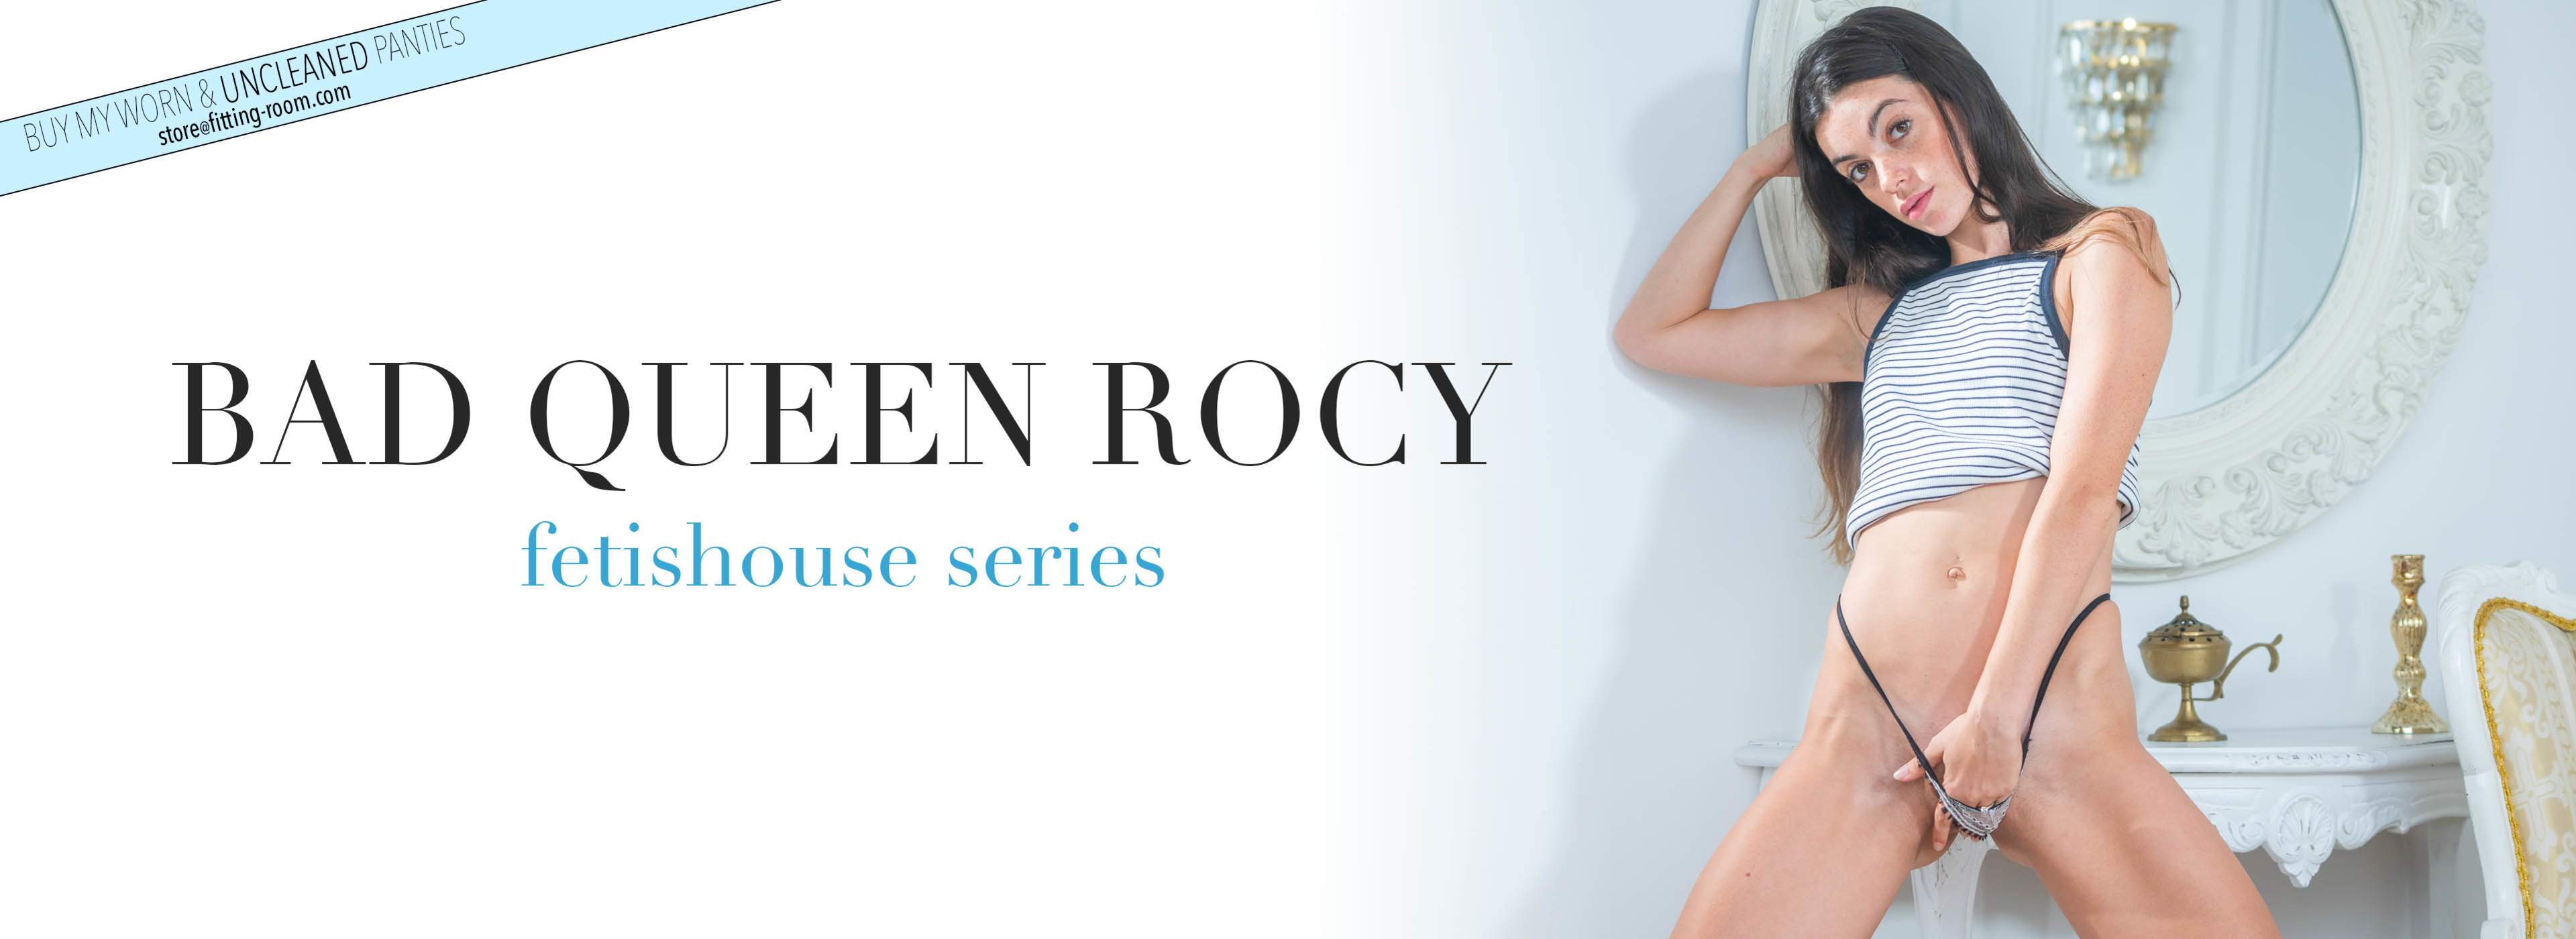 Bad Queen Rocy | Cute Barefoot Girl